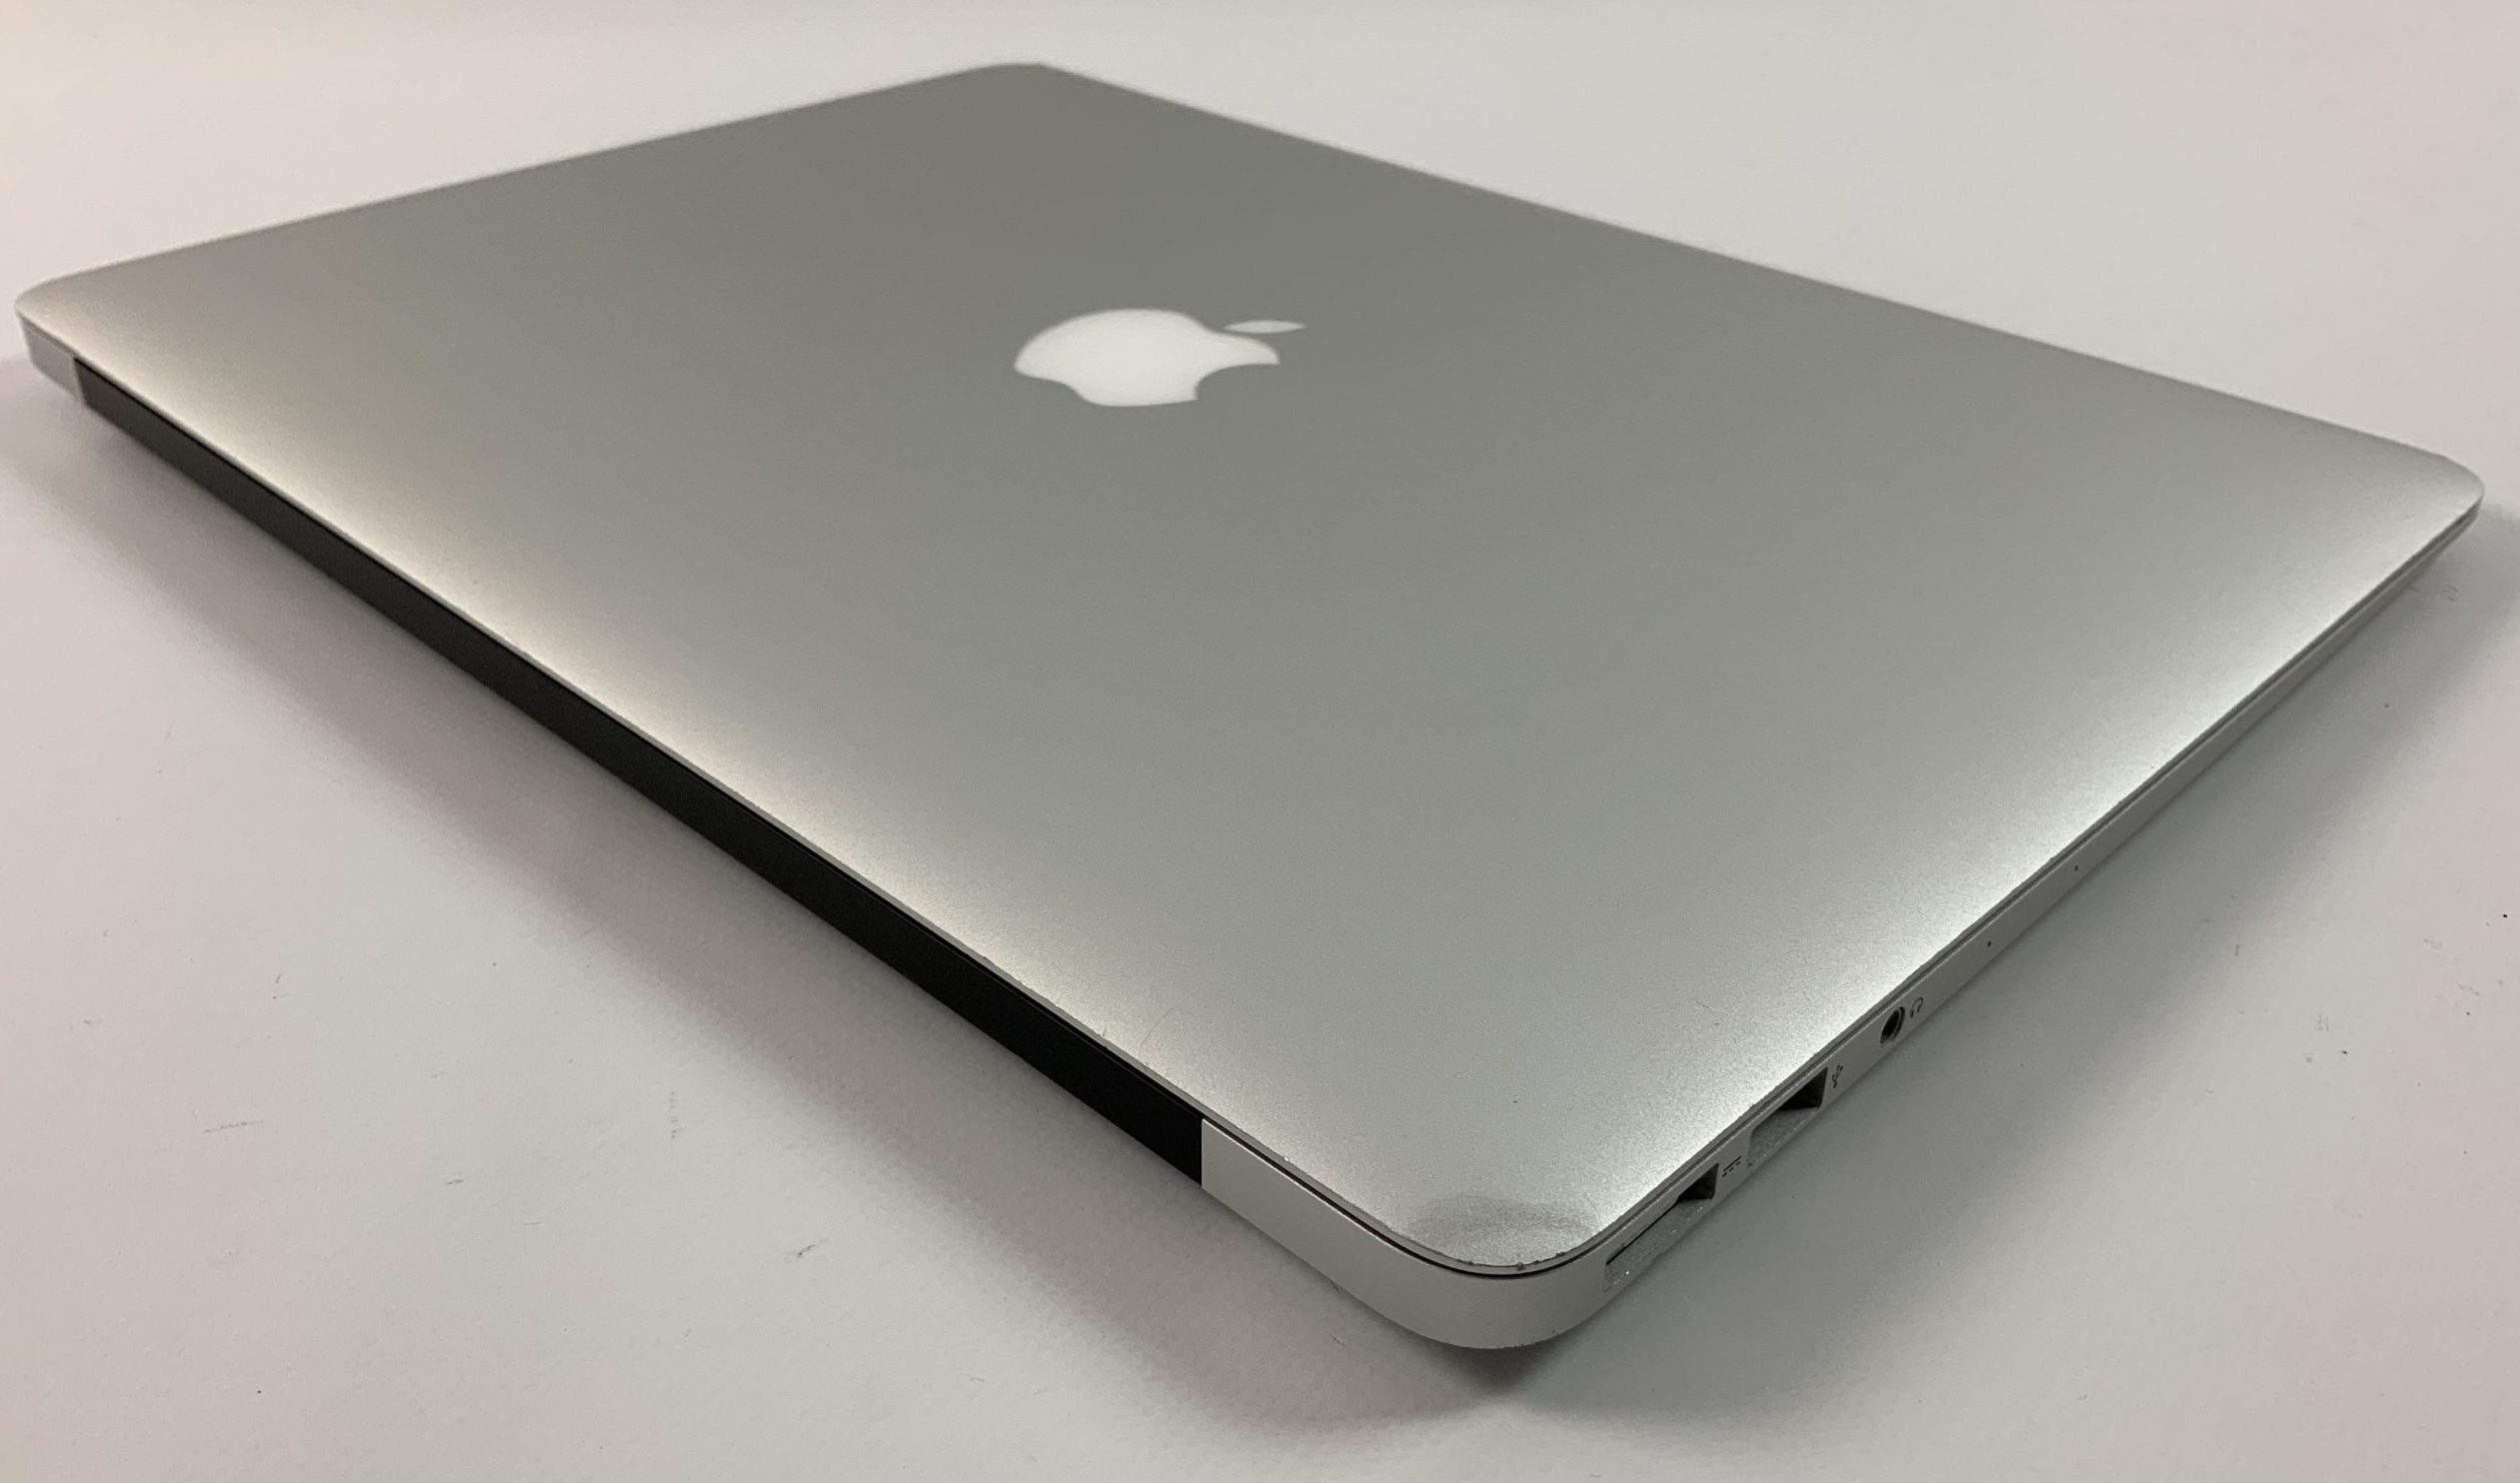 MacBook Air 13" Mid 2017 (Intel Core i5 1.8 GHz 8 GB RAM 256 GB SSD), Intel Core i5 1.8 GHz, 8 GB RAM, 256 GB SSD, image 4